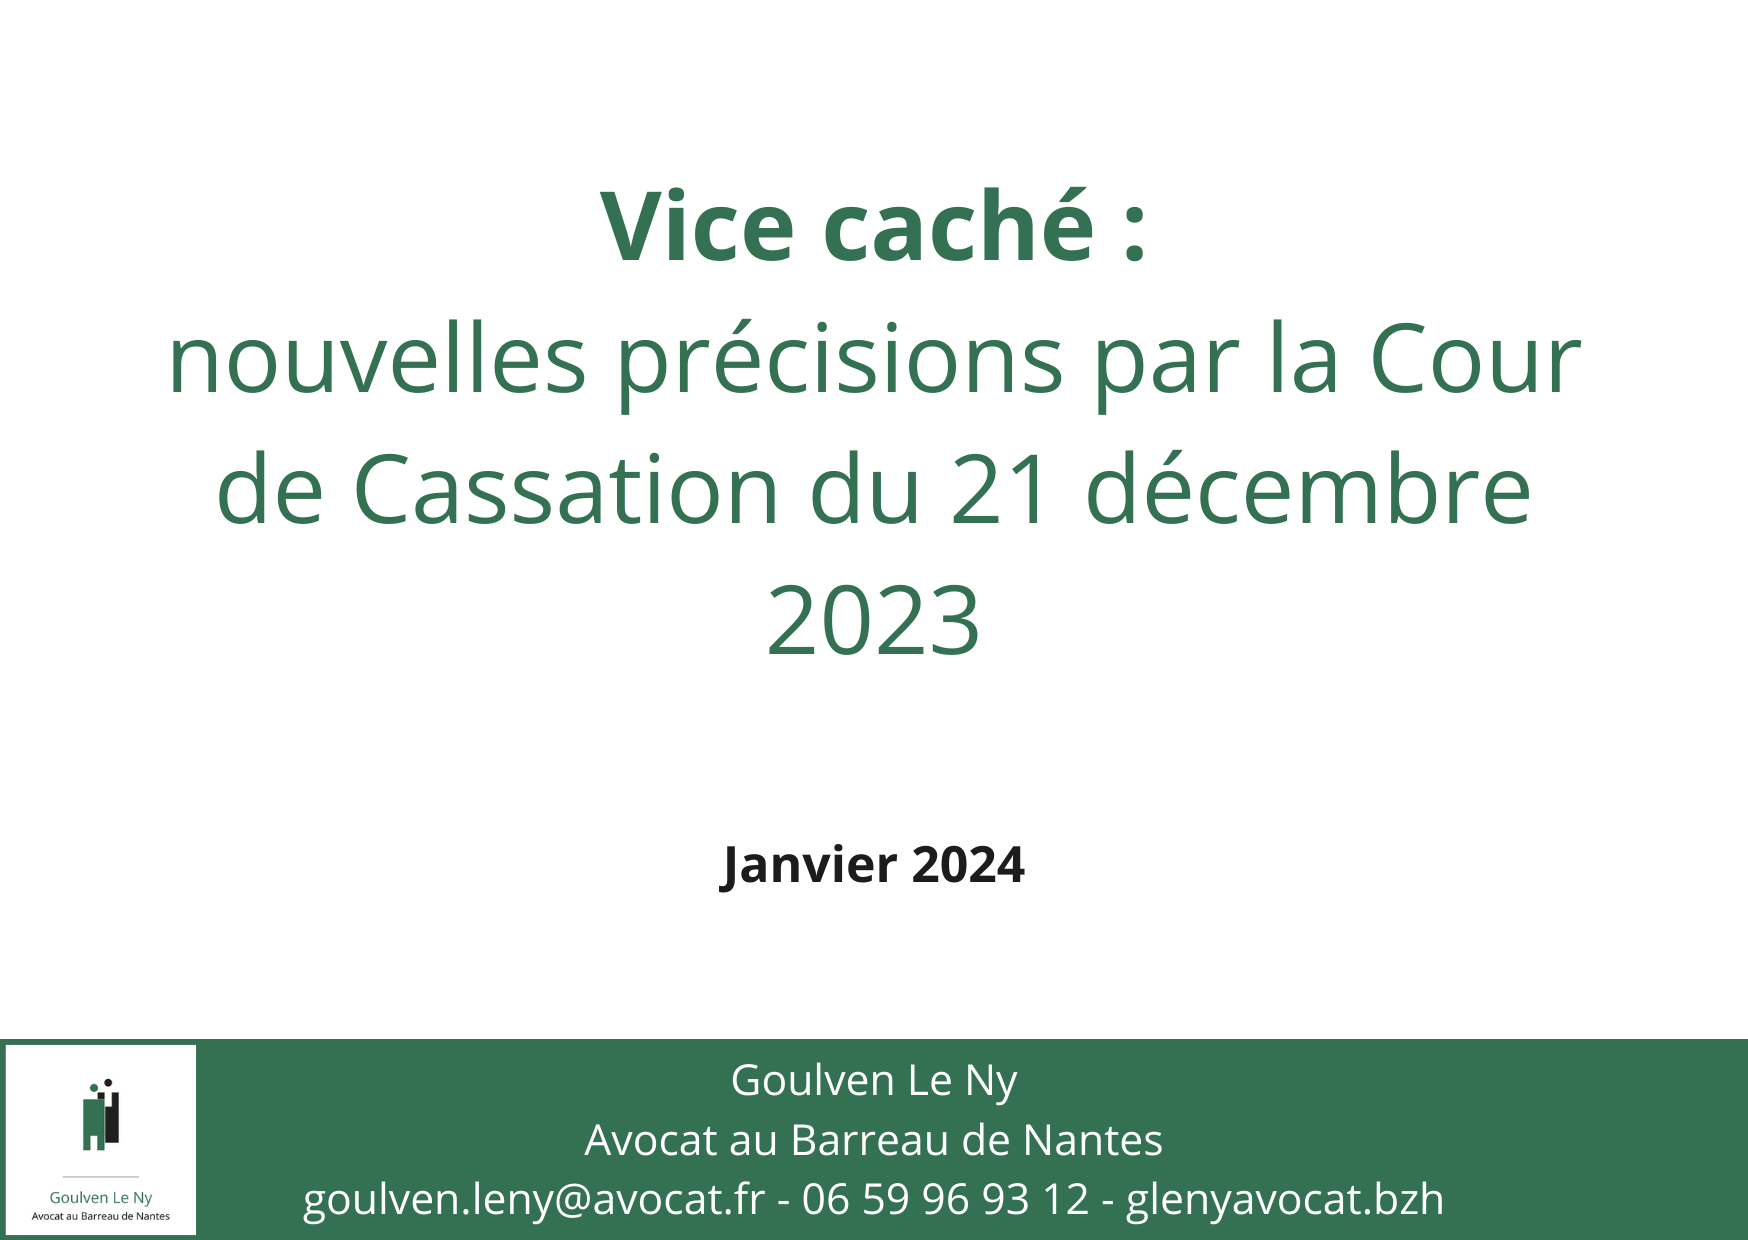 Vice caché : nouvelles précisions par la Cour de Cassation du 21 décembre 2023